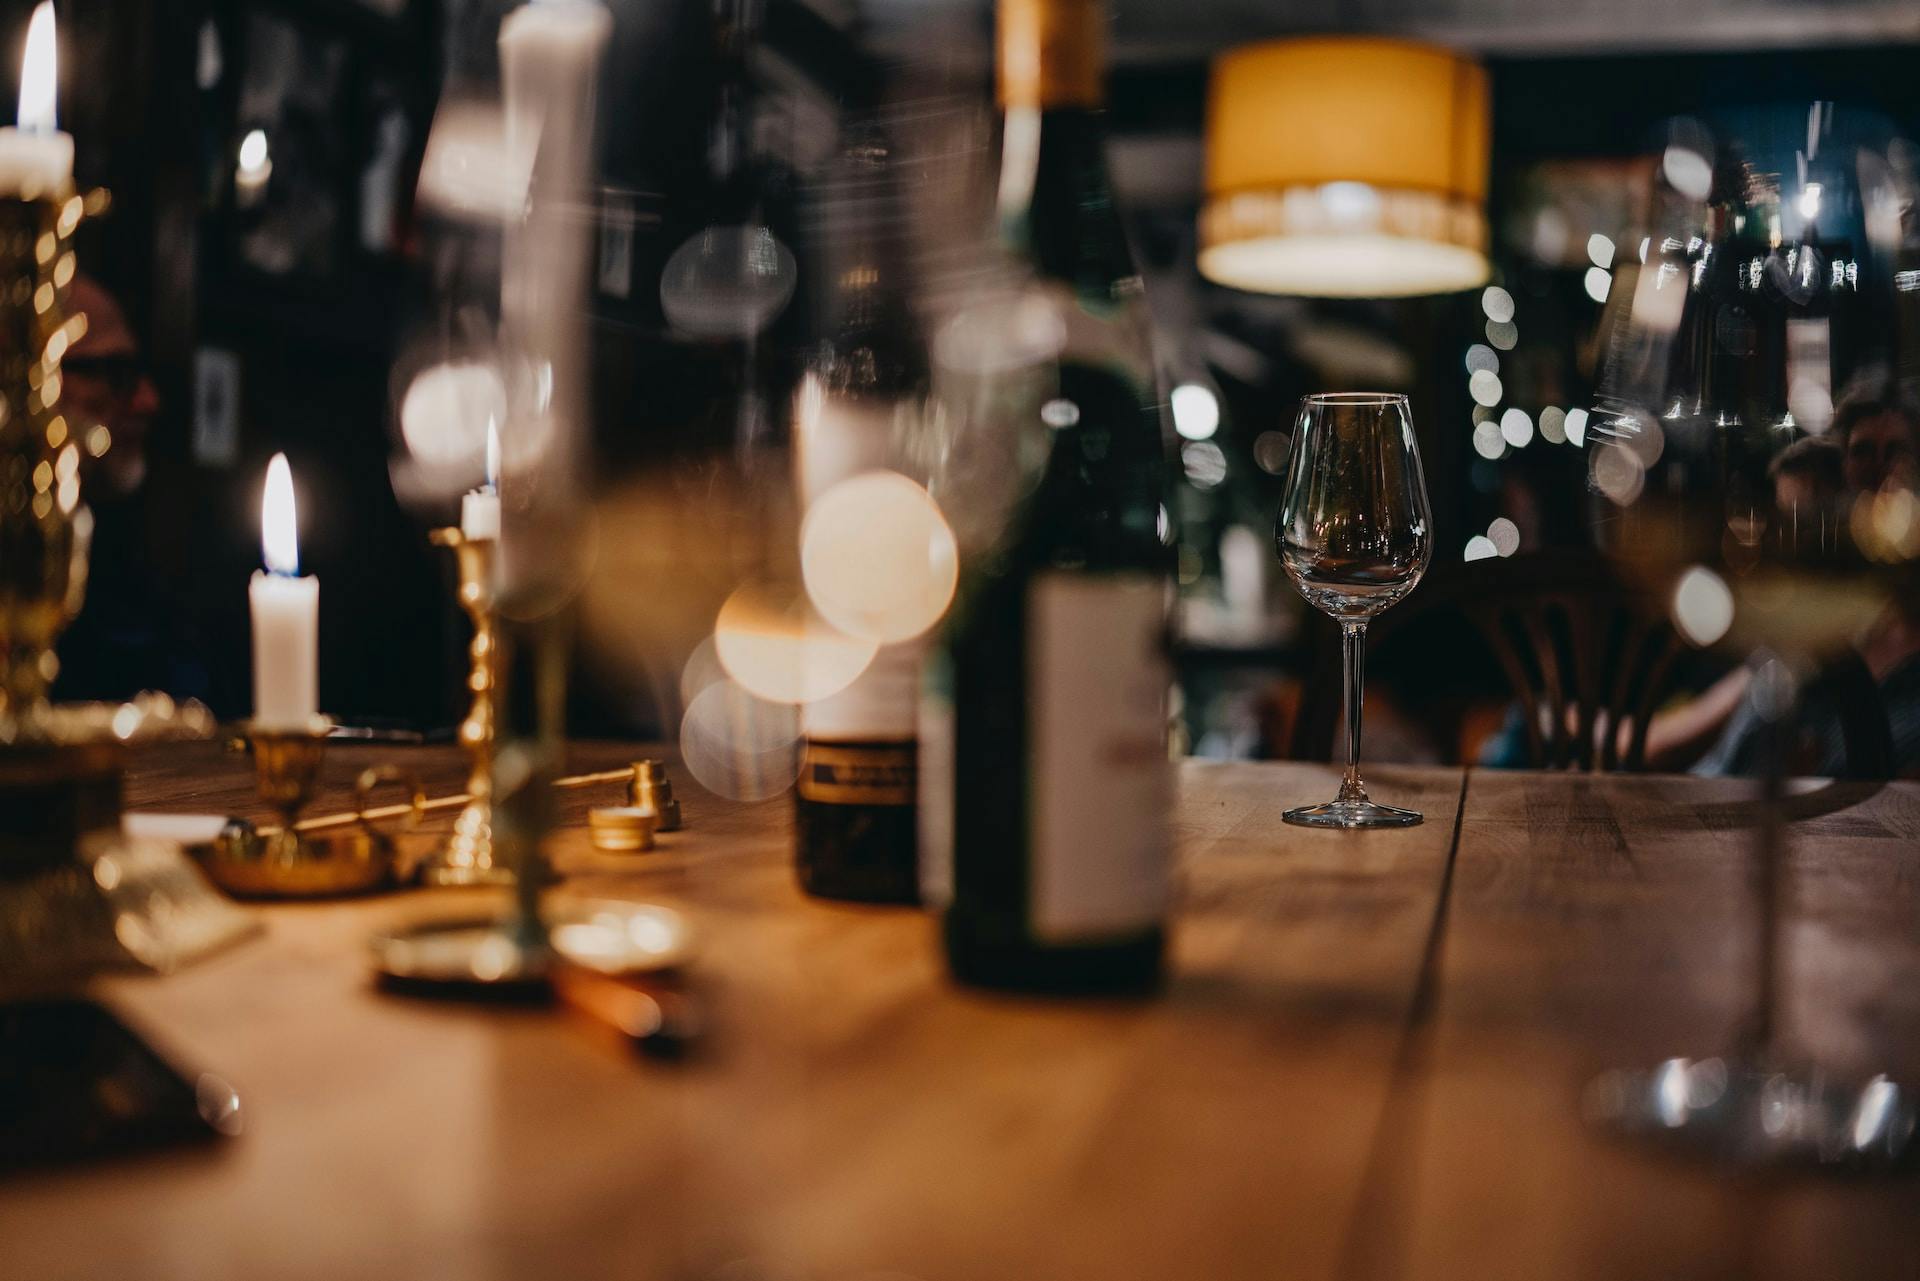 Weinflasche auf Holztisch, Weingläser und Kerzenlicht 